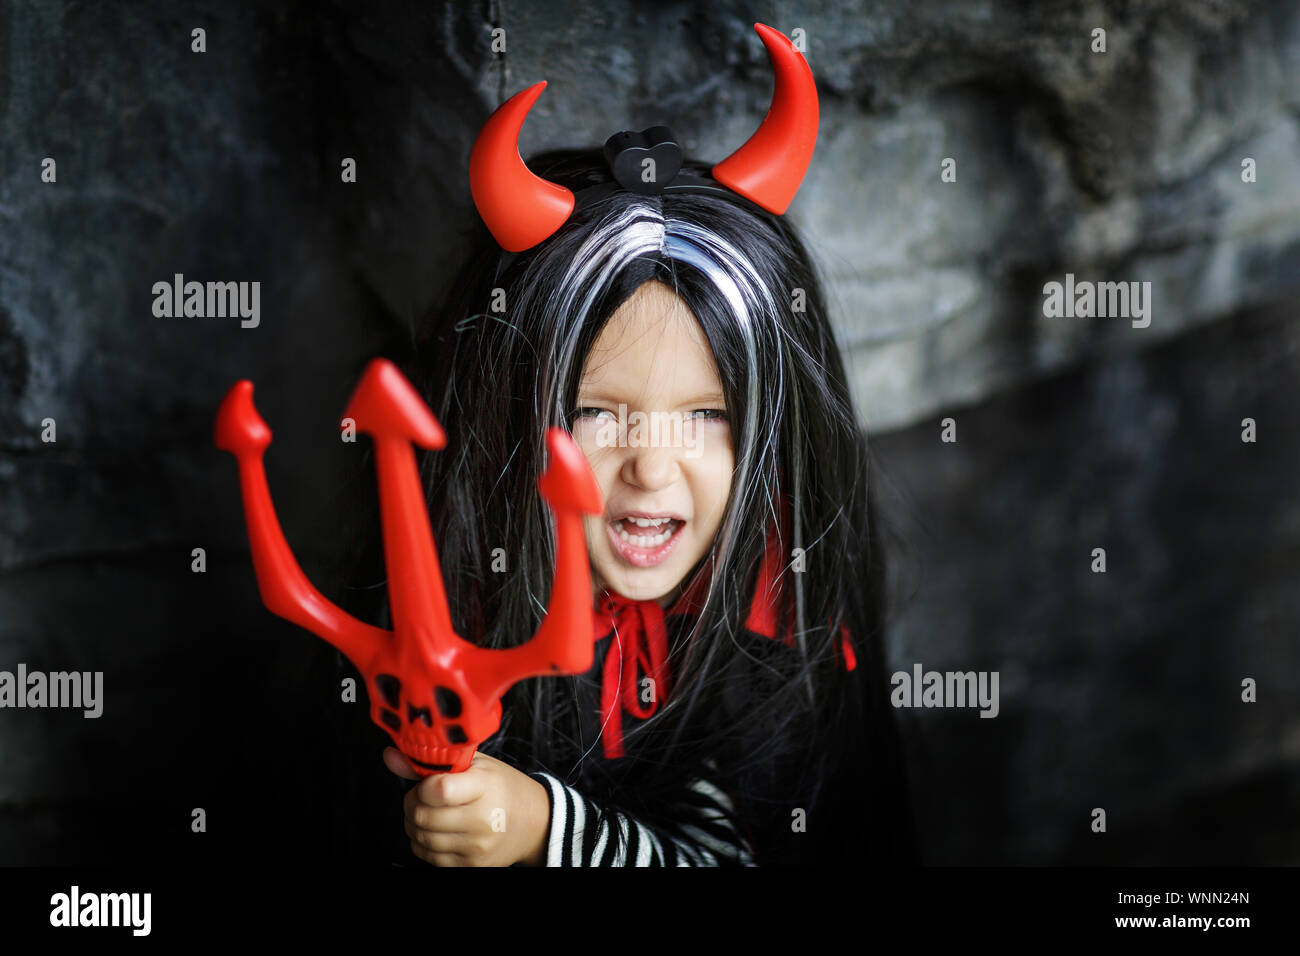 Costume da diavolo immagini e fotografie stock ad alta risoluzione - Alamy